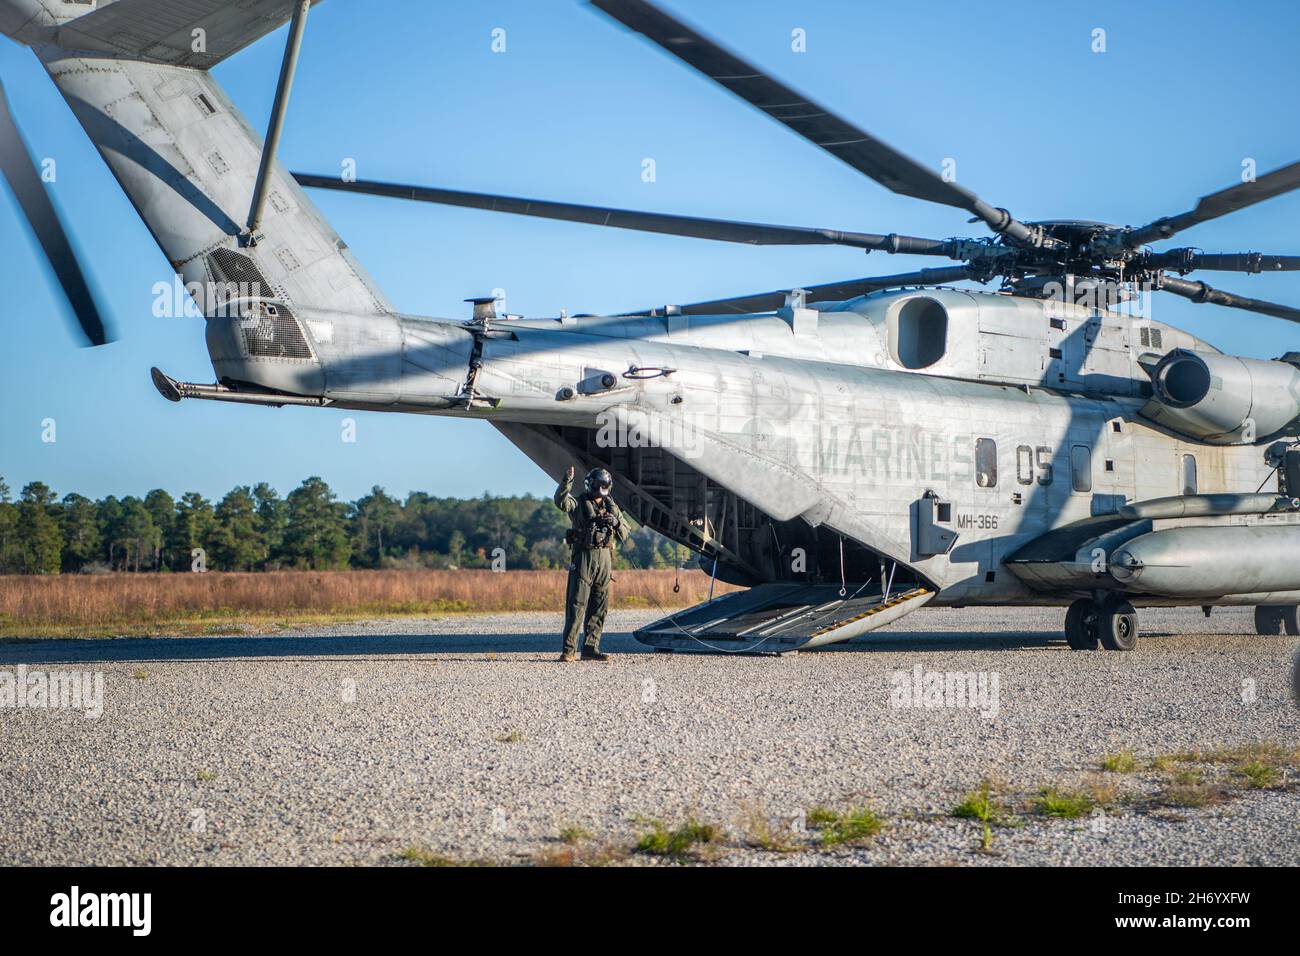 Un piloto de helicóptero del Cuerpo de Infantería de Marina CH-53 'Sea Stallion' dirige a 820 aviadores del Grupo de Defensa Base y soldados de la Guardia Nacional del Ejército al helicóptero en la Base de la Fuerza Aérea Moody, Georgia, 16 de noviembre de 2021. Los aviadores del Grupo de Defensa de la Base de 820, junto con los soldados de la Guardia Nacional del Ejército de Georgia y los miembros de la tripulación del helicóptero del Cuerpo de Infantería de Marina CH-53, realizaron operaciones aéreas de entrenamiento para intercambiar tácticas, técnicas y procedimientos de tres ramas del ejército y fortalecer capacidades conjuntas de misiones de empleo ágiles en combate. (EE.UU Foto de la Fuerza Aérea de 1st Lt. Katie Tamesis) Foto de stock